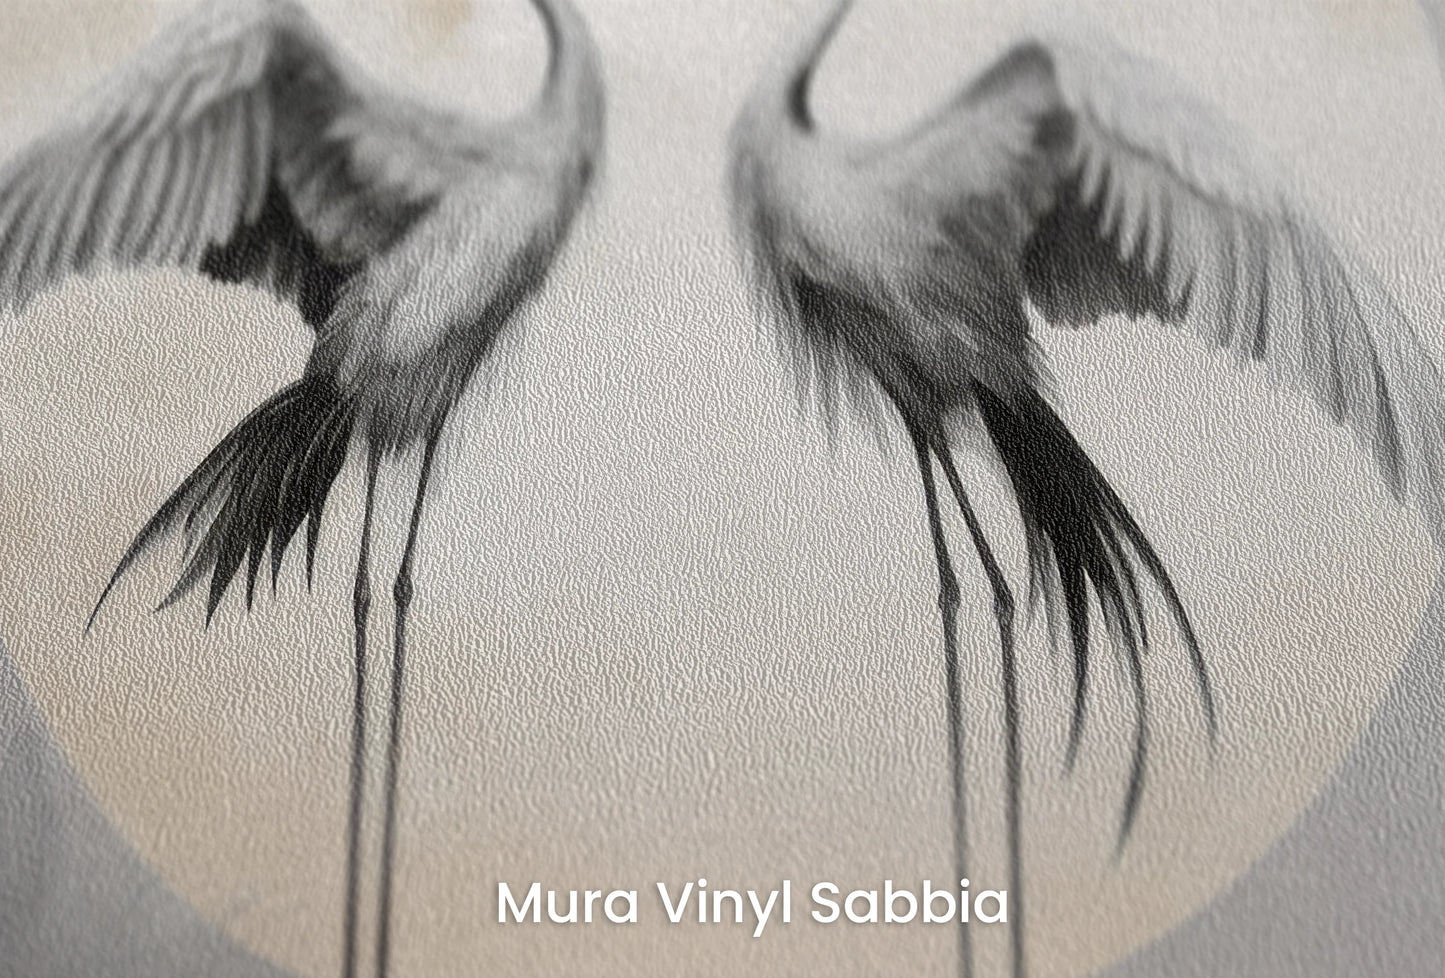 Zbliżenie na artystyczną fototapetę o nazwie Celestial Serenity na podłożu Mura Vinyl Sabbia struktura grubego ziarna piasku.